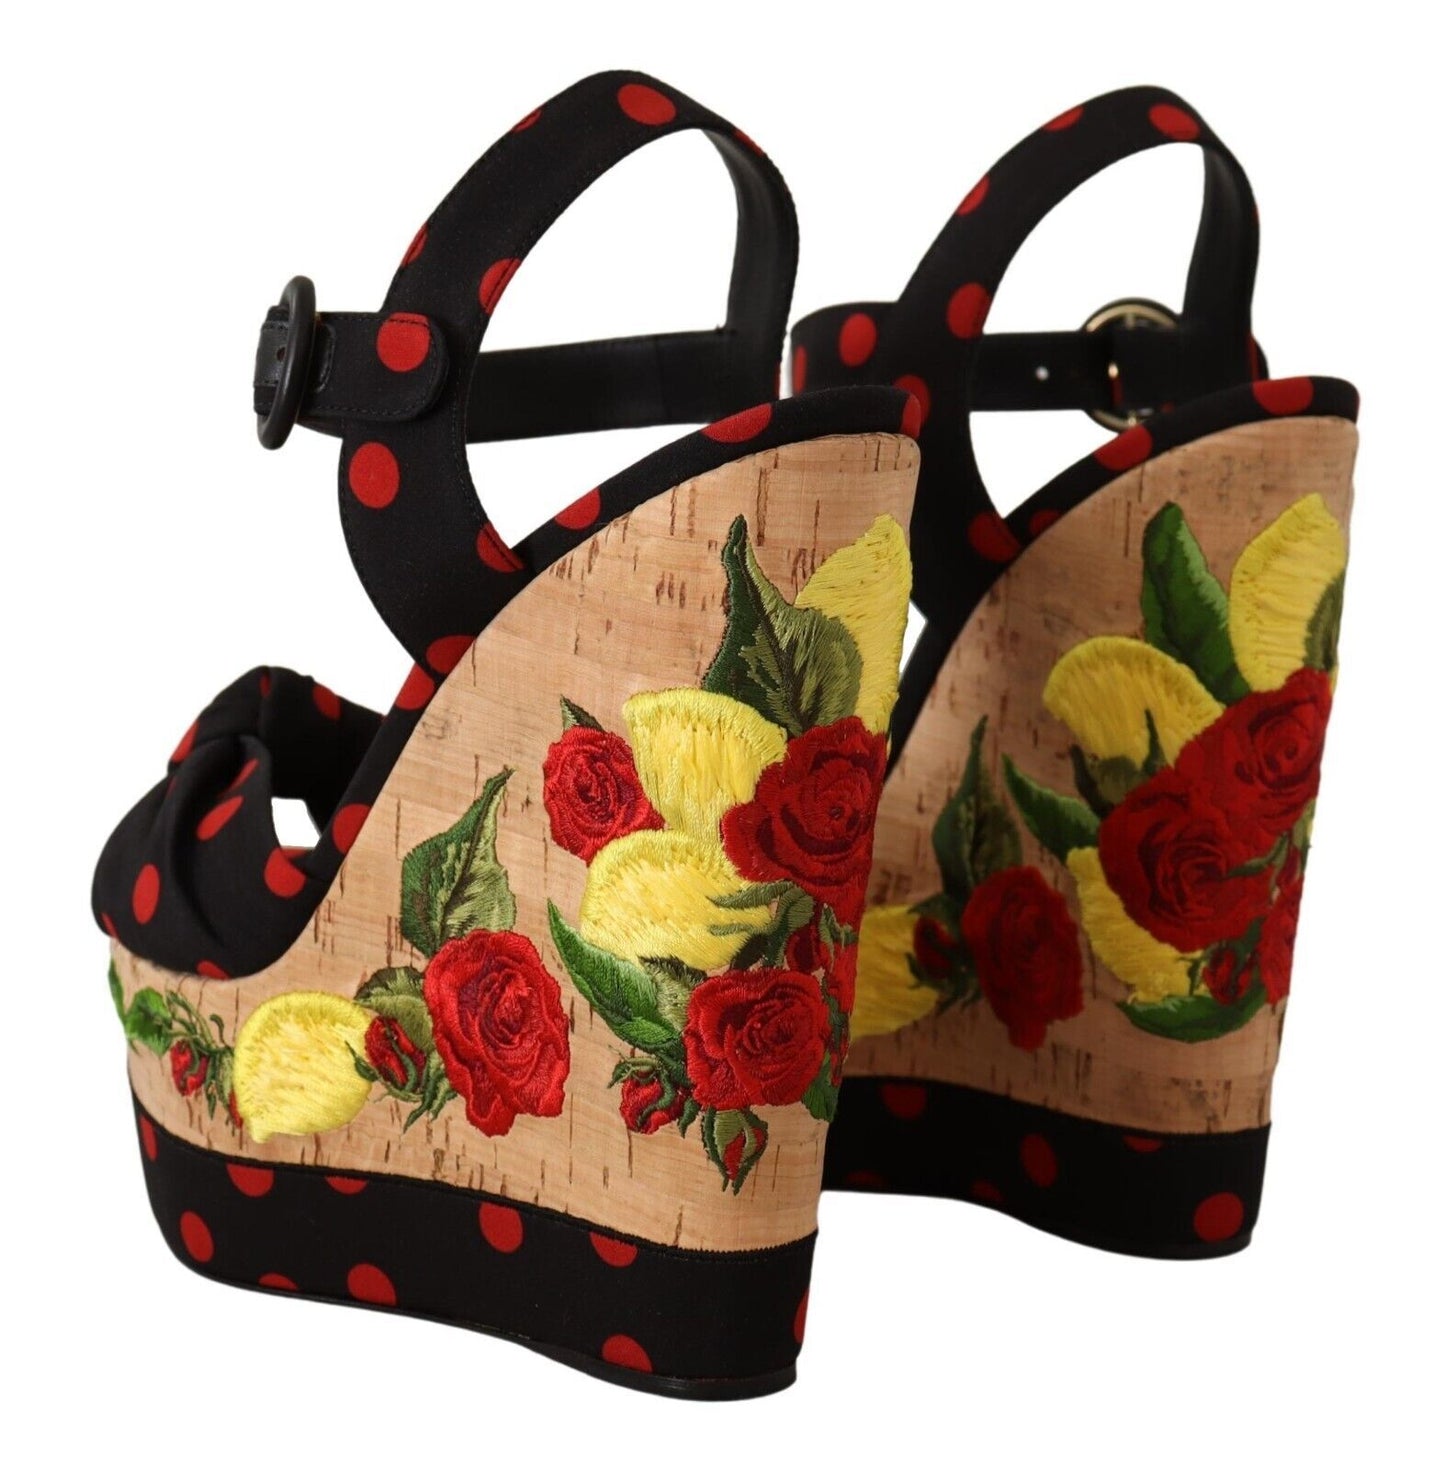 Dolce & Gabbana Piattaforma multicolore zeppe sandali Scarpe per allegate